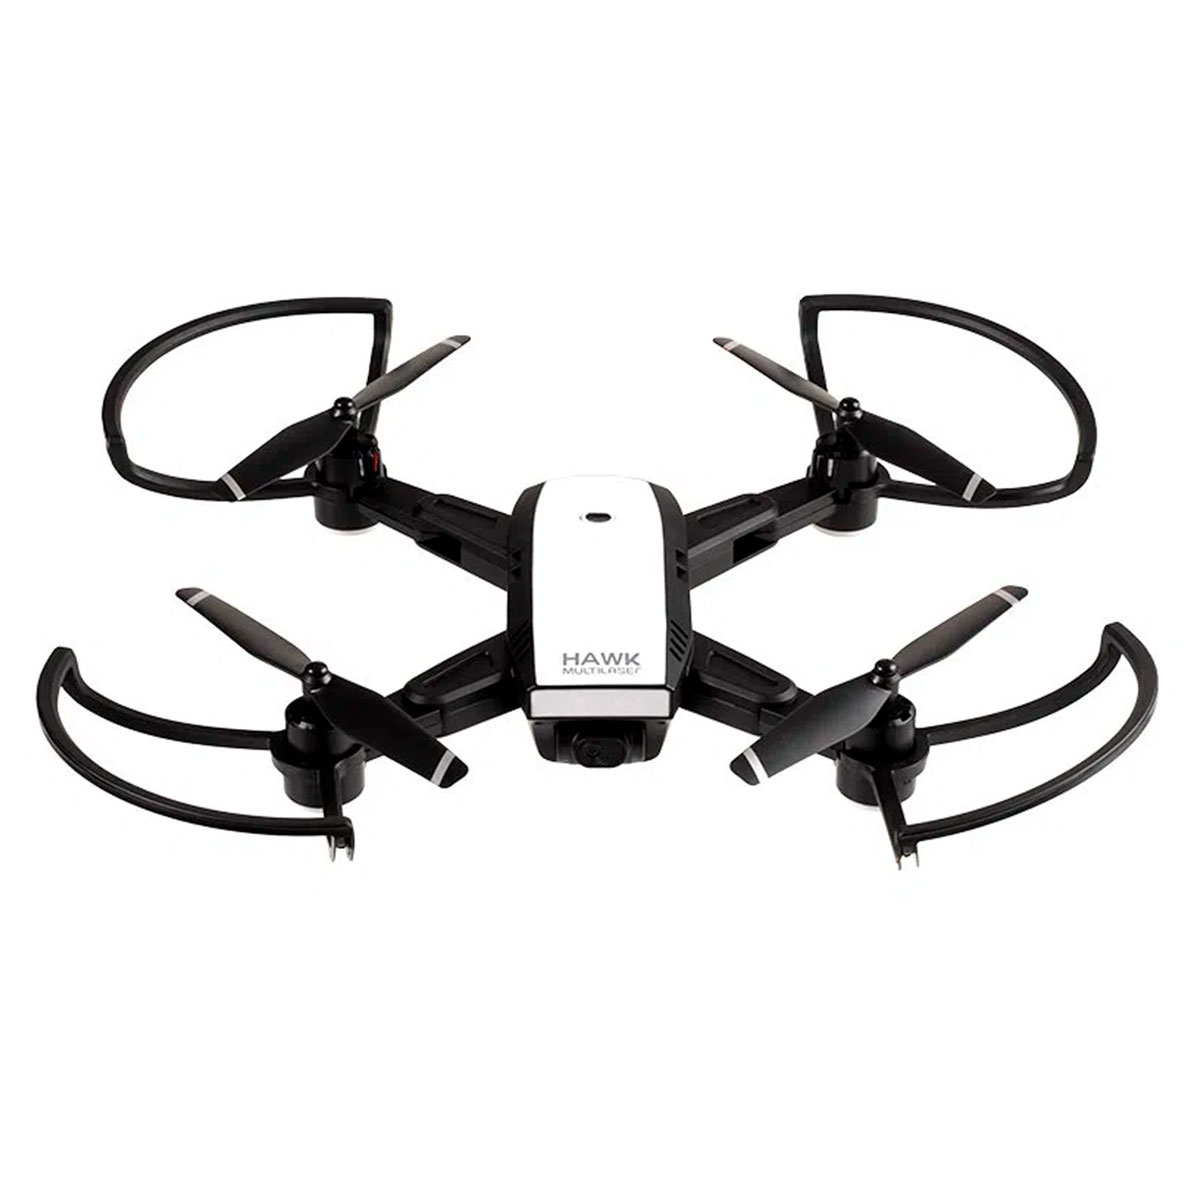 Drone Multilaser Hawk ES257 - Câmera 720p HD - Alcance 150 metros - Autonomia 10 minutos - GPS